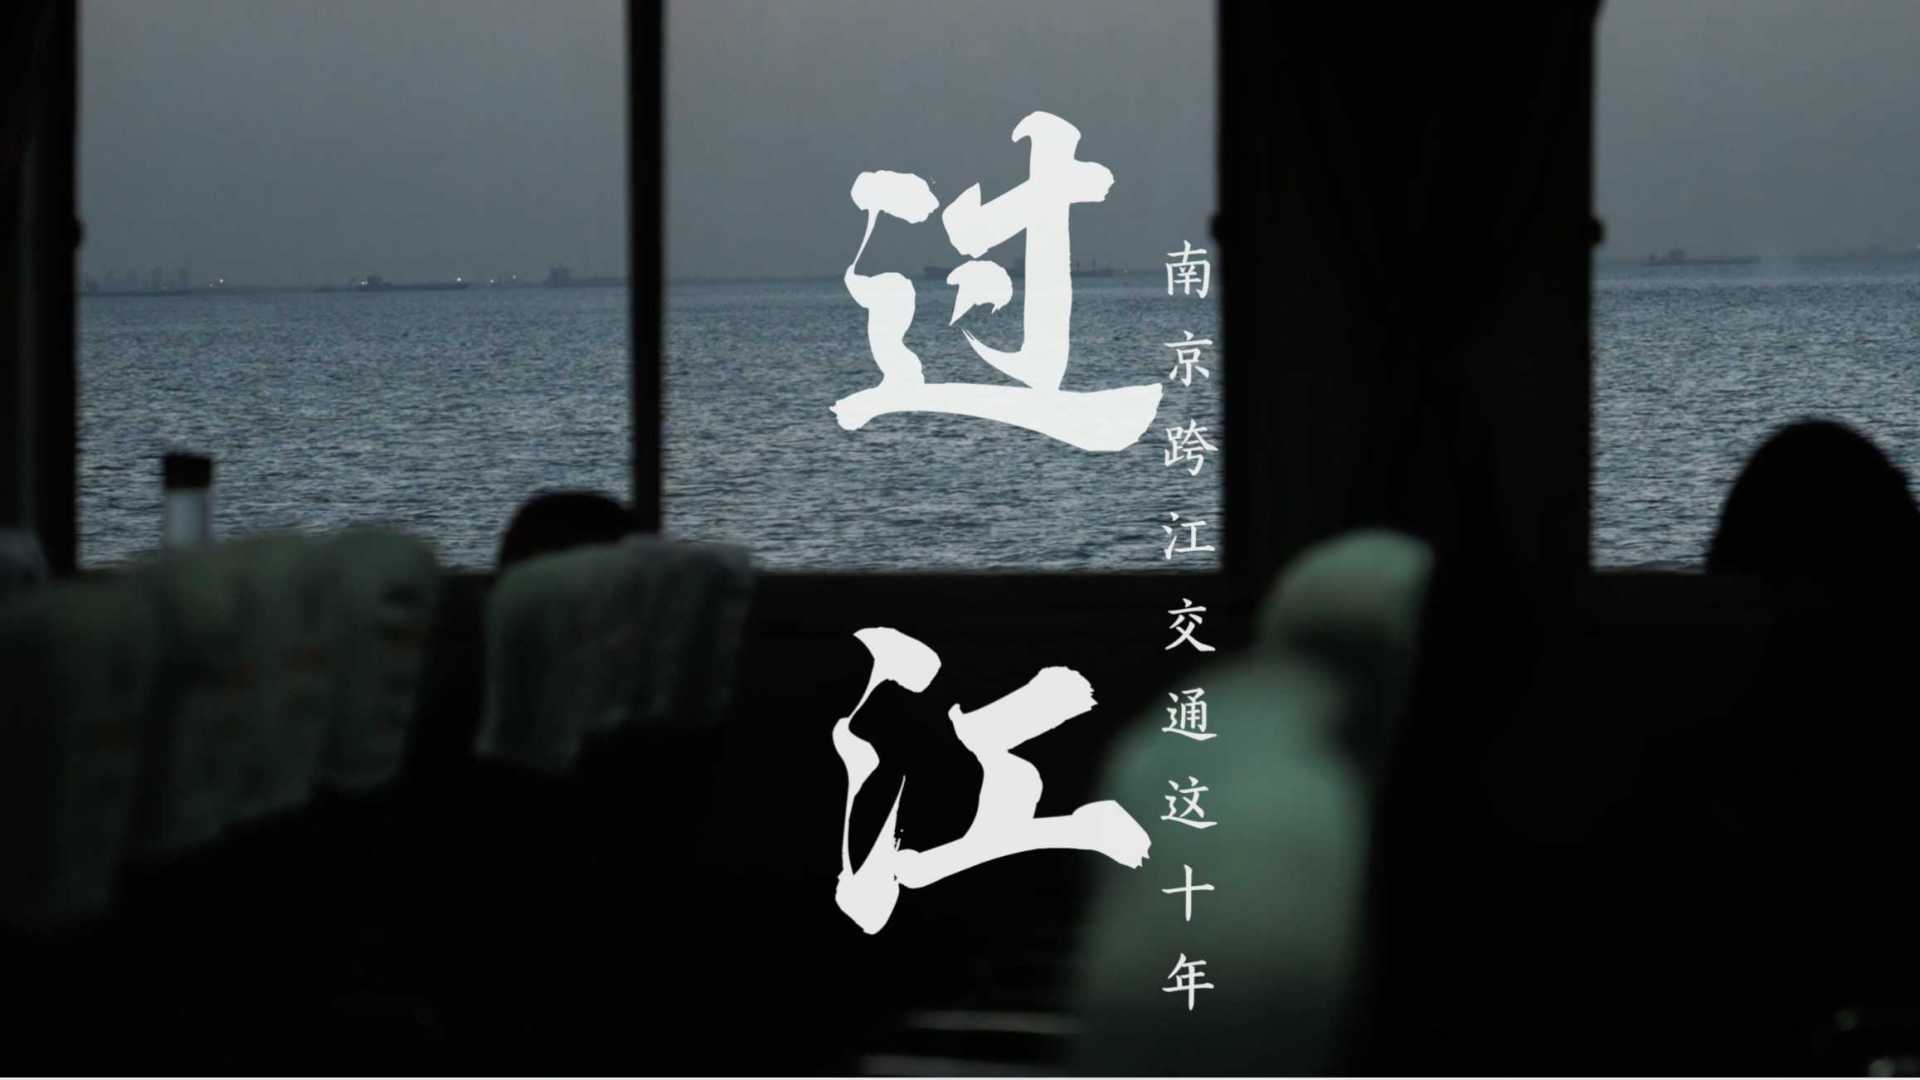 《过江·十年》—— 南京与长江这十年